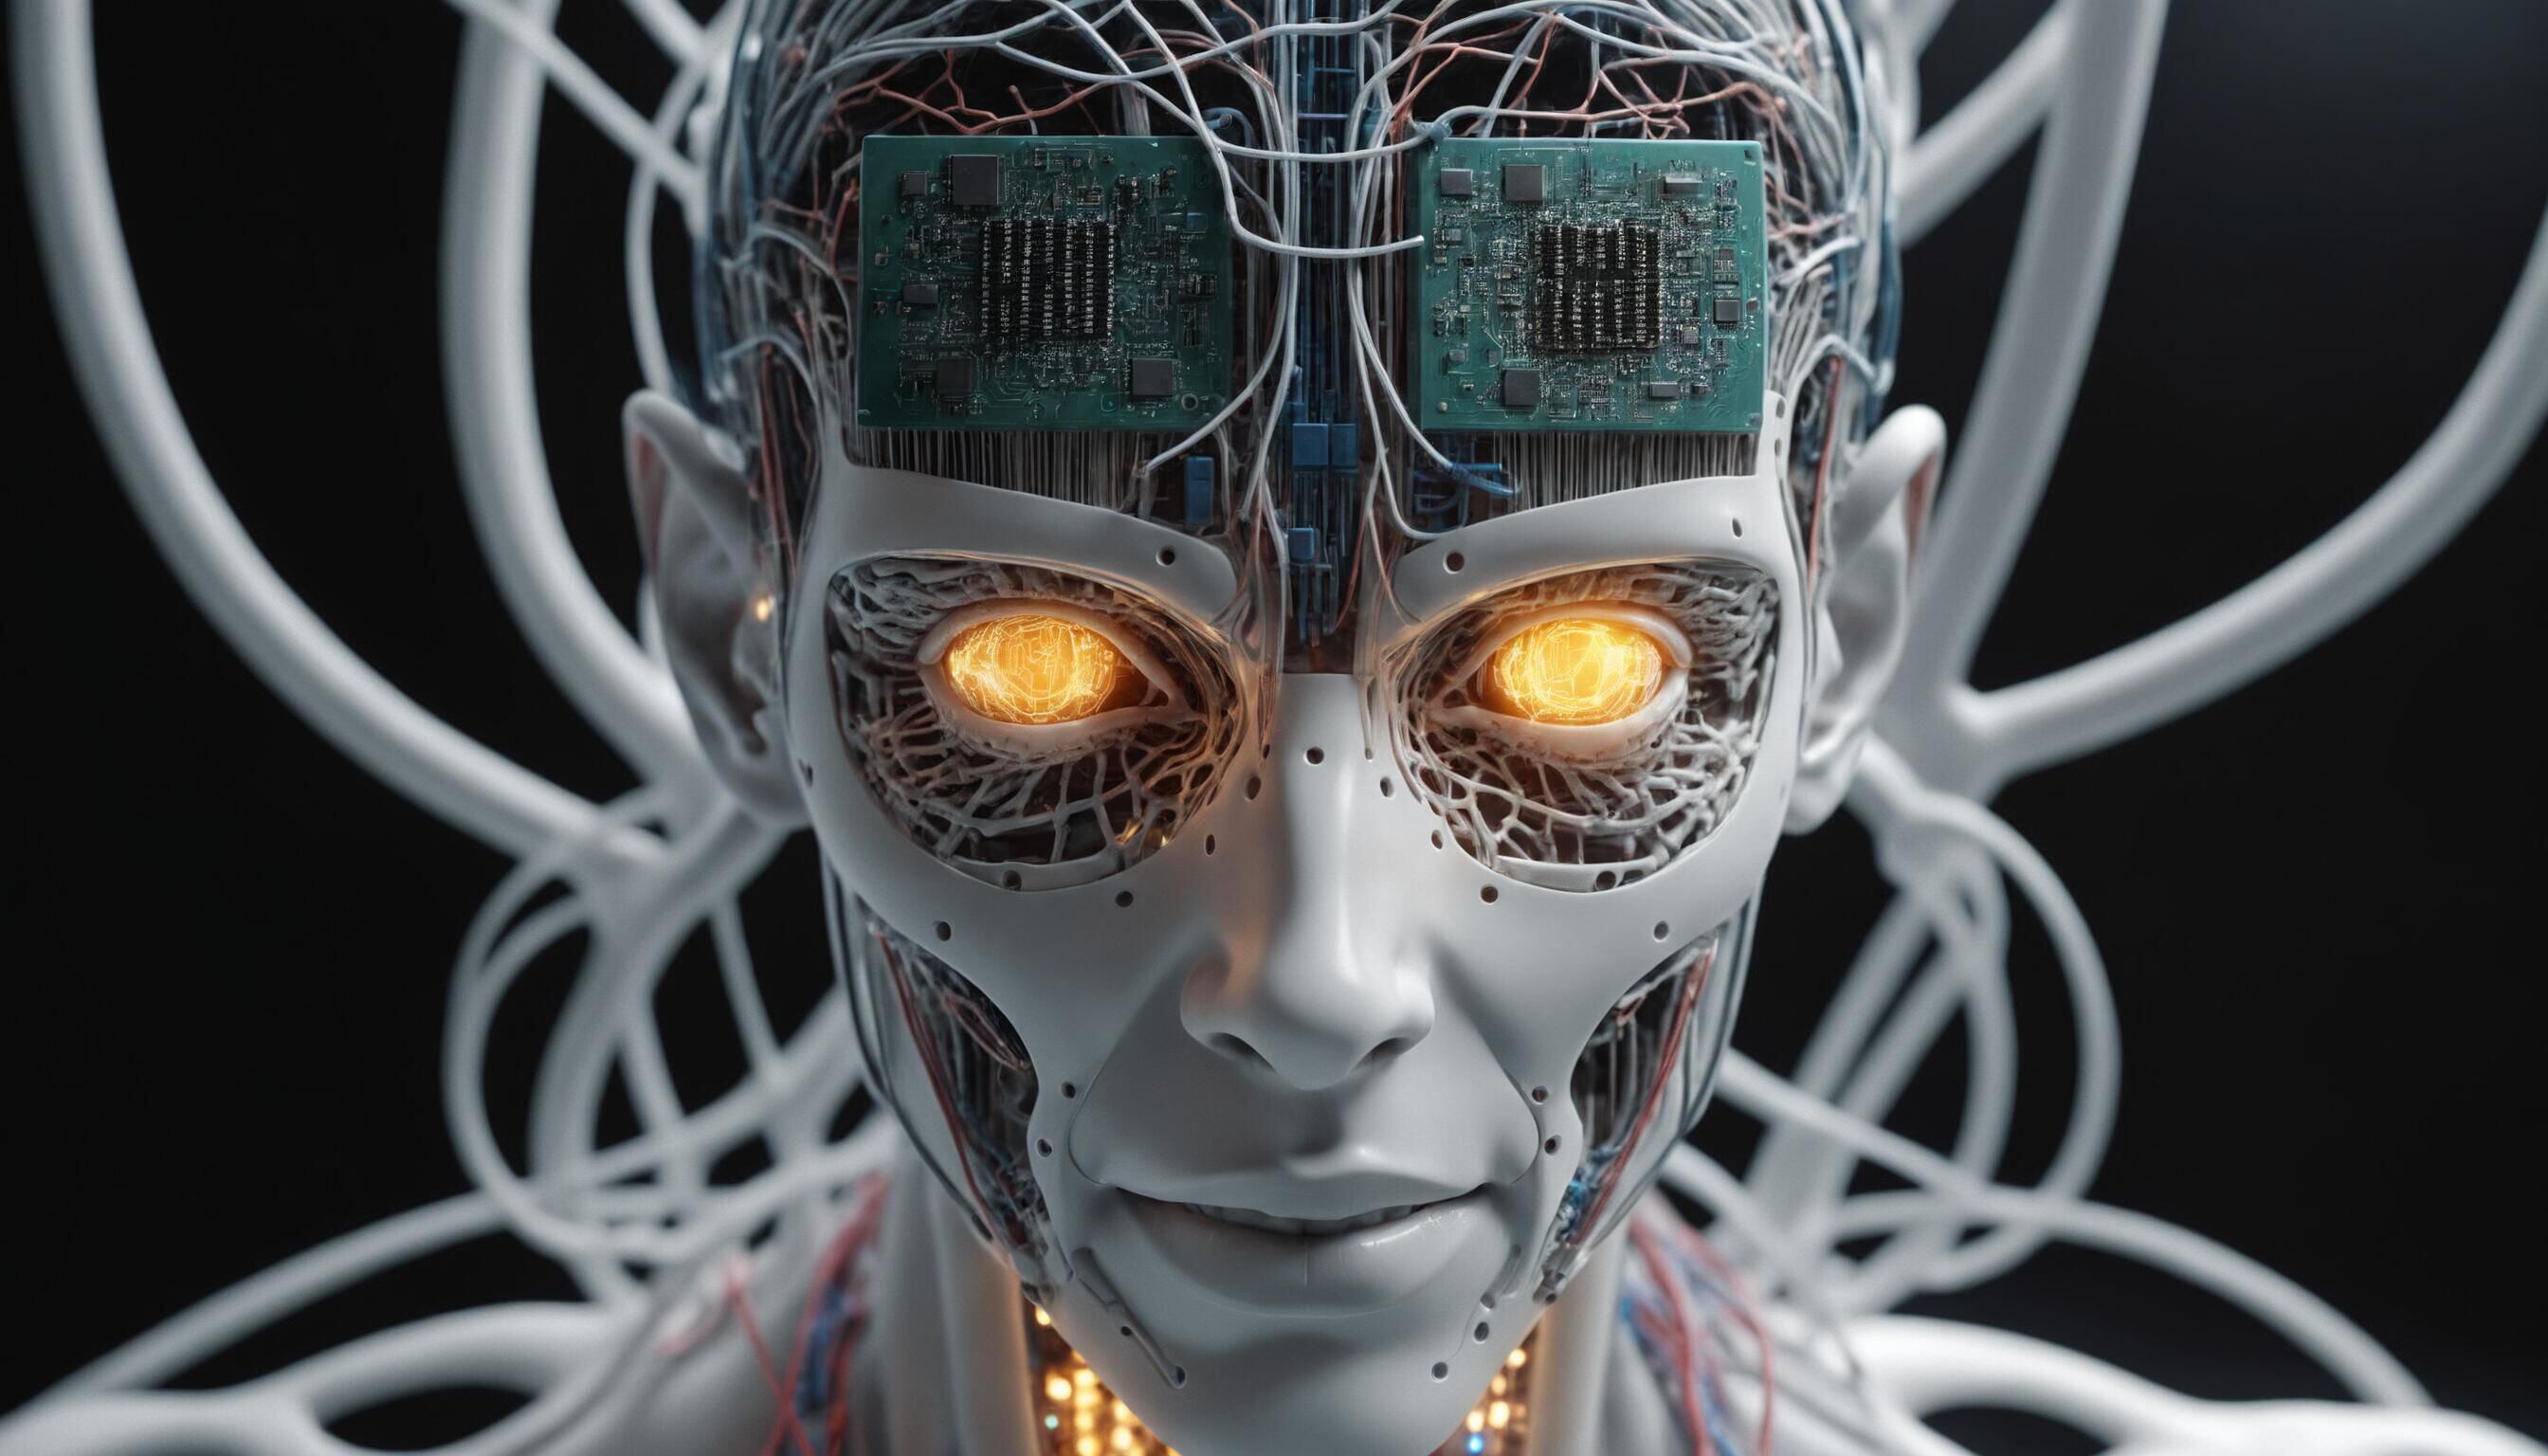 Ilustración en 3D de una cabeza de robot futurista, principalmente blanca con cables naranjas y azules enredados. La cara borrosa agrega un toque de misterio. Representación intrigante de la inteligencia artificial y futuros androides. (Imagen ilustrativa Infobae)